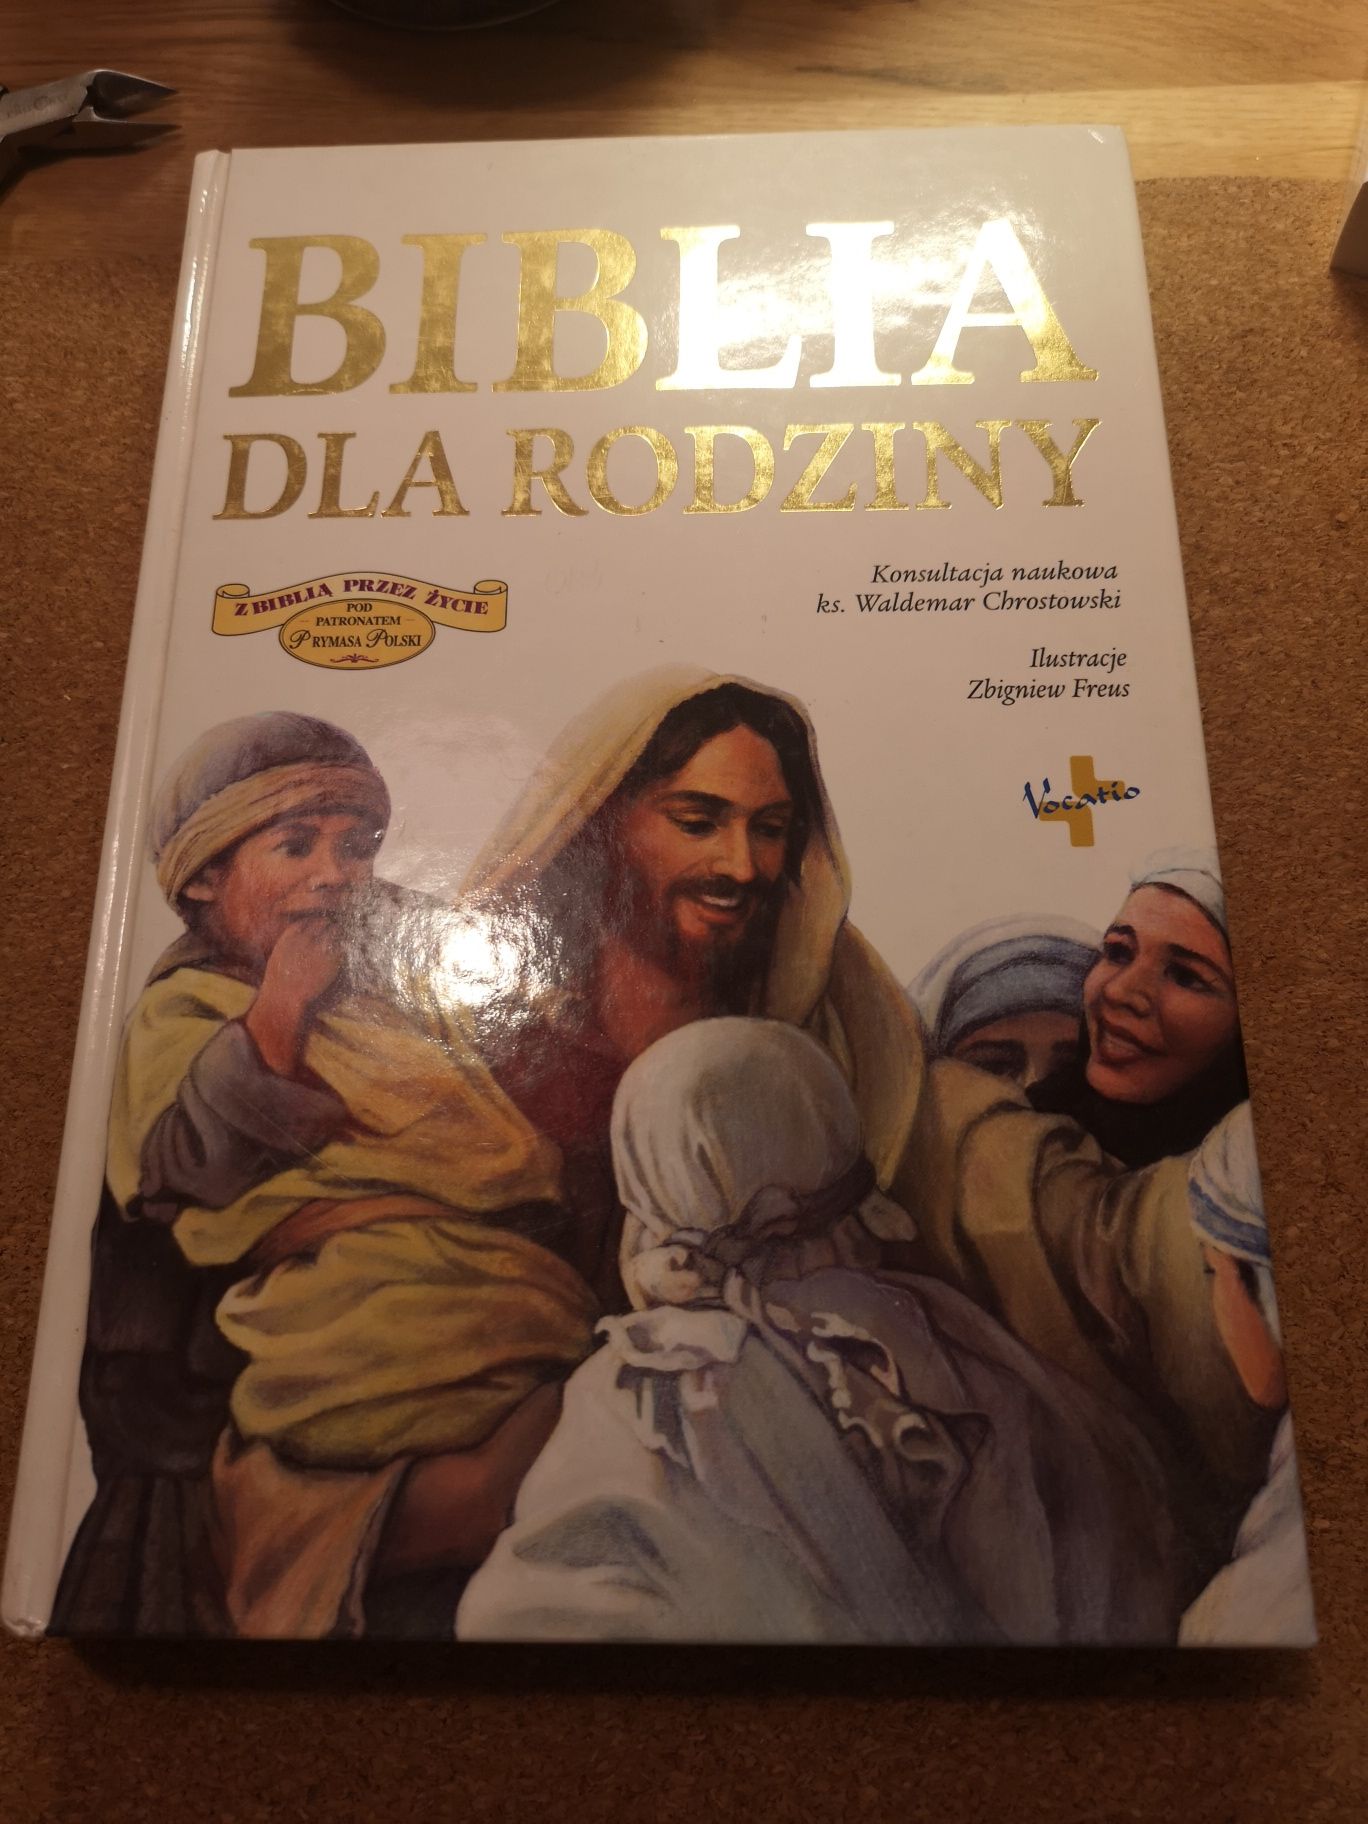 Prezent I komunia Biblia dla rodziny Imprimatur Kurii Warszawskiej2004